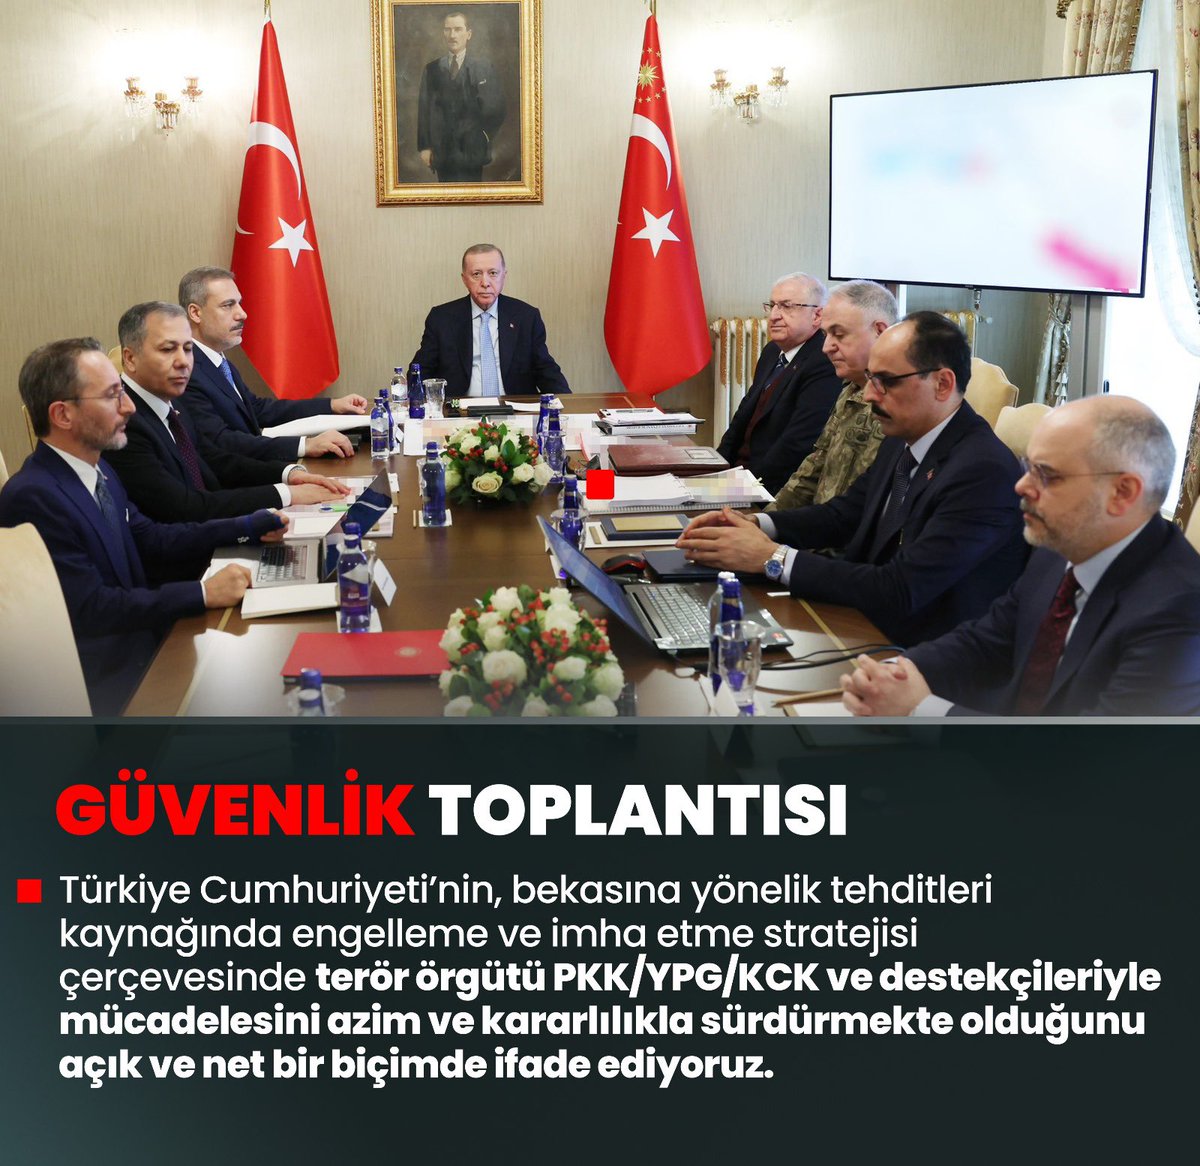 Genel Başkanımız ve Cumhurbaşkanımız Sn.Recep Tayyip Erdoğan: Türkiye yüzyılı hedeflerimizin önünü kesmek için kurulan tuzaklara maşalık yapanları da,onların iplerini ellerinde tutanları da hüsrana uğratmakta kararlıyız. #GüvenlikToplantısı